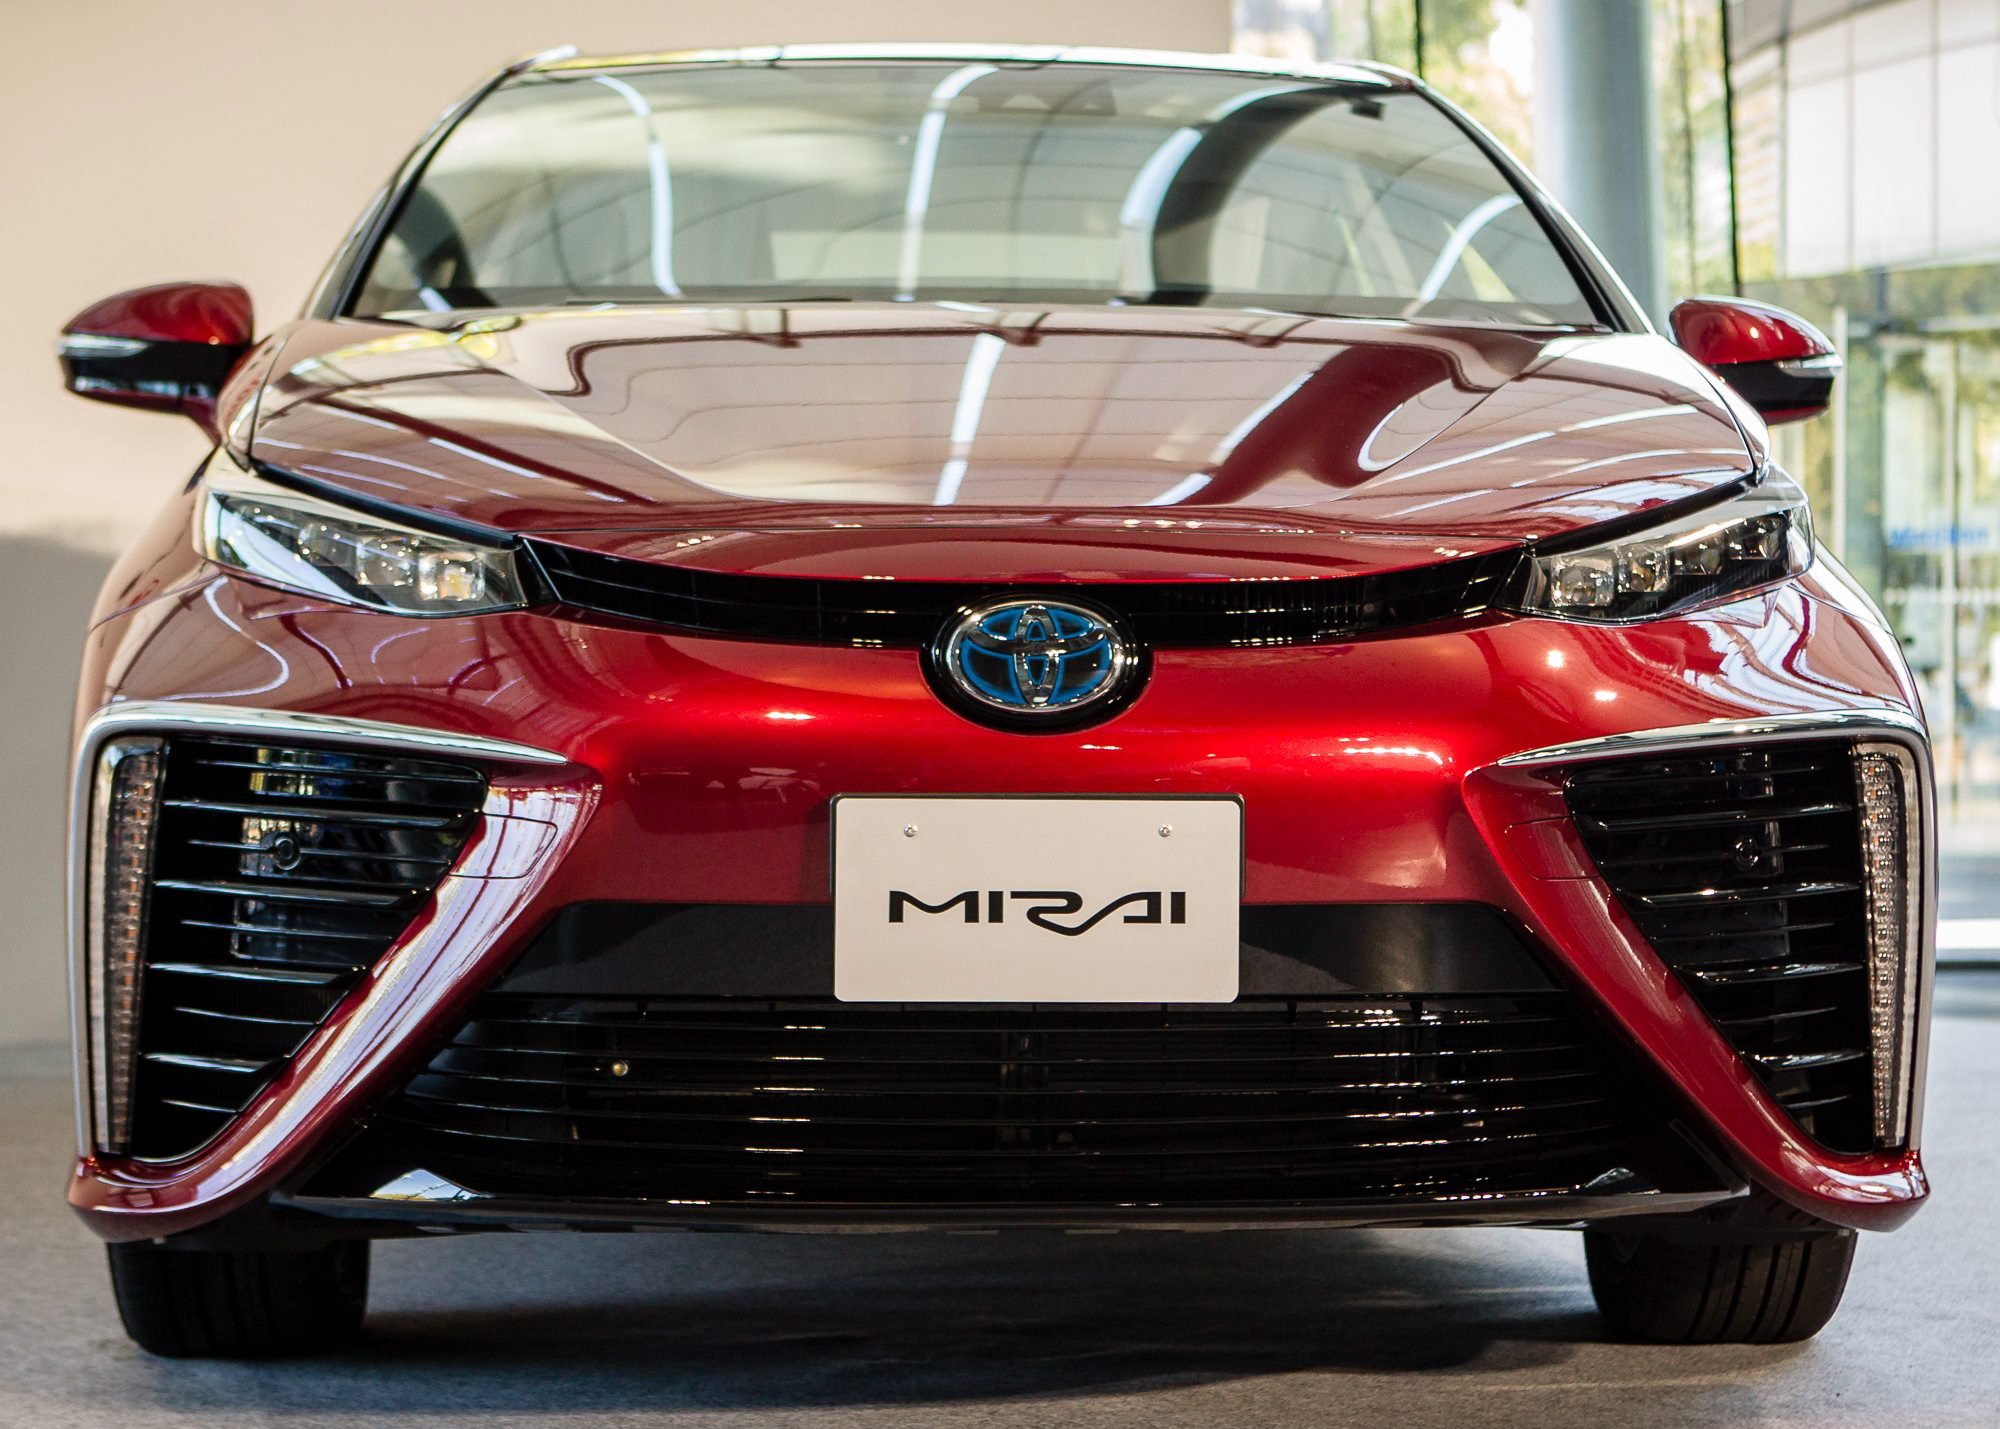 Der Toyota Mirai hat eine Brennstoffzelle an Bord. Auffällig sind die großen Lufteinlässe in der Fahrzeugfront.